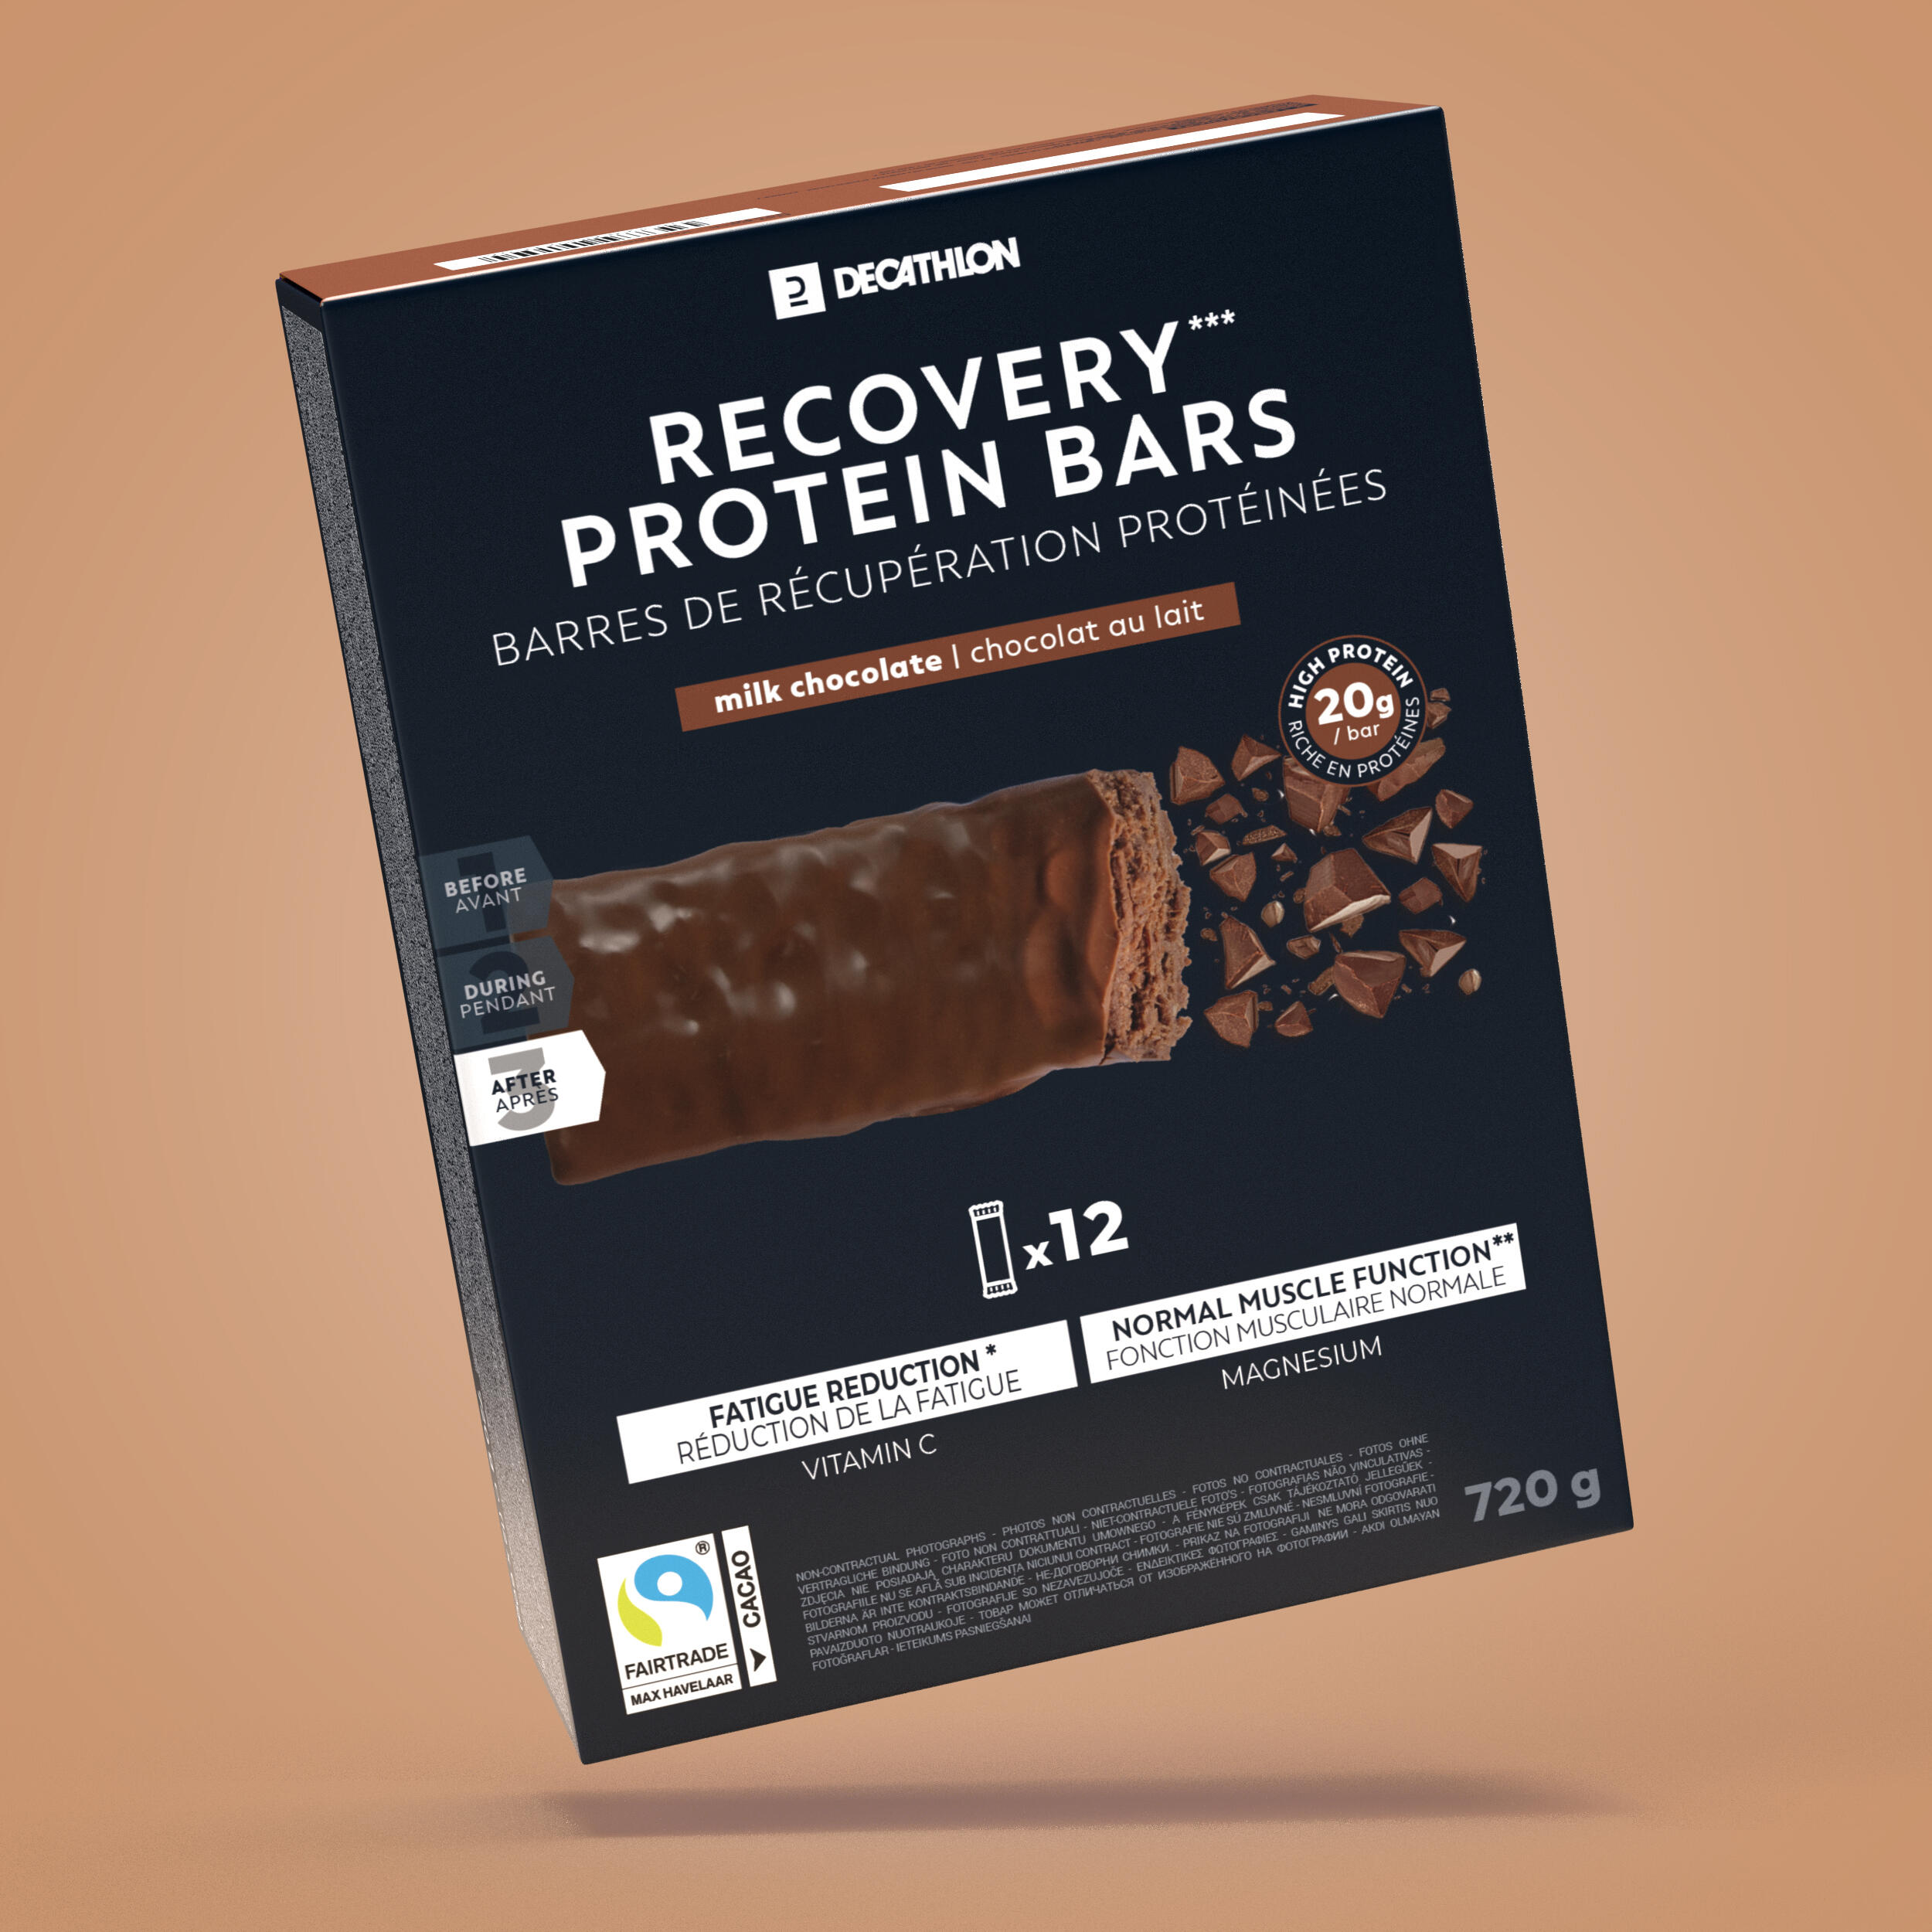 Baton proteic de recuperare*12 Ciocolată Baton Nutritie